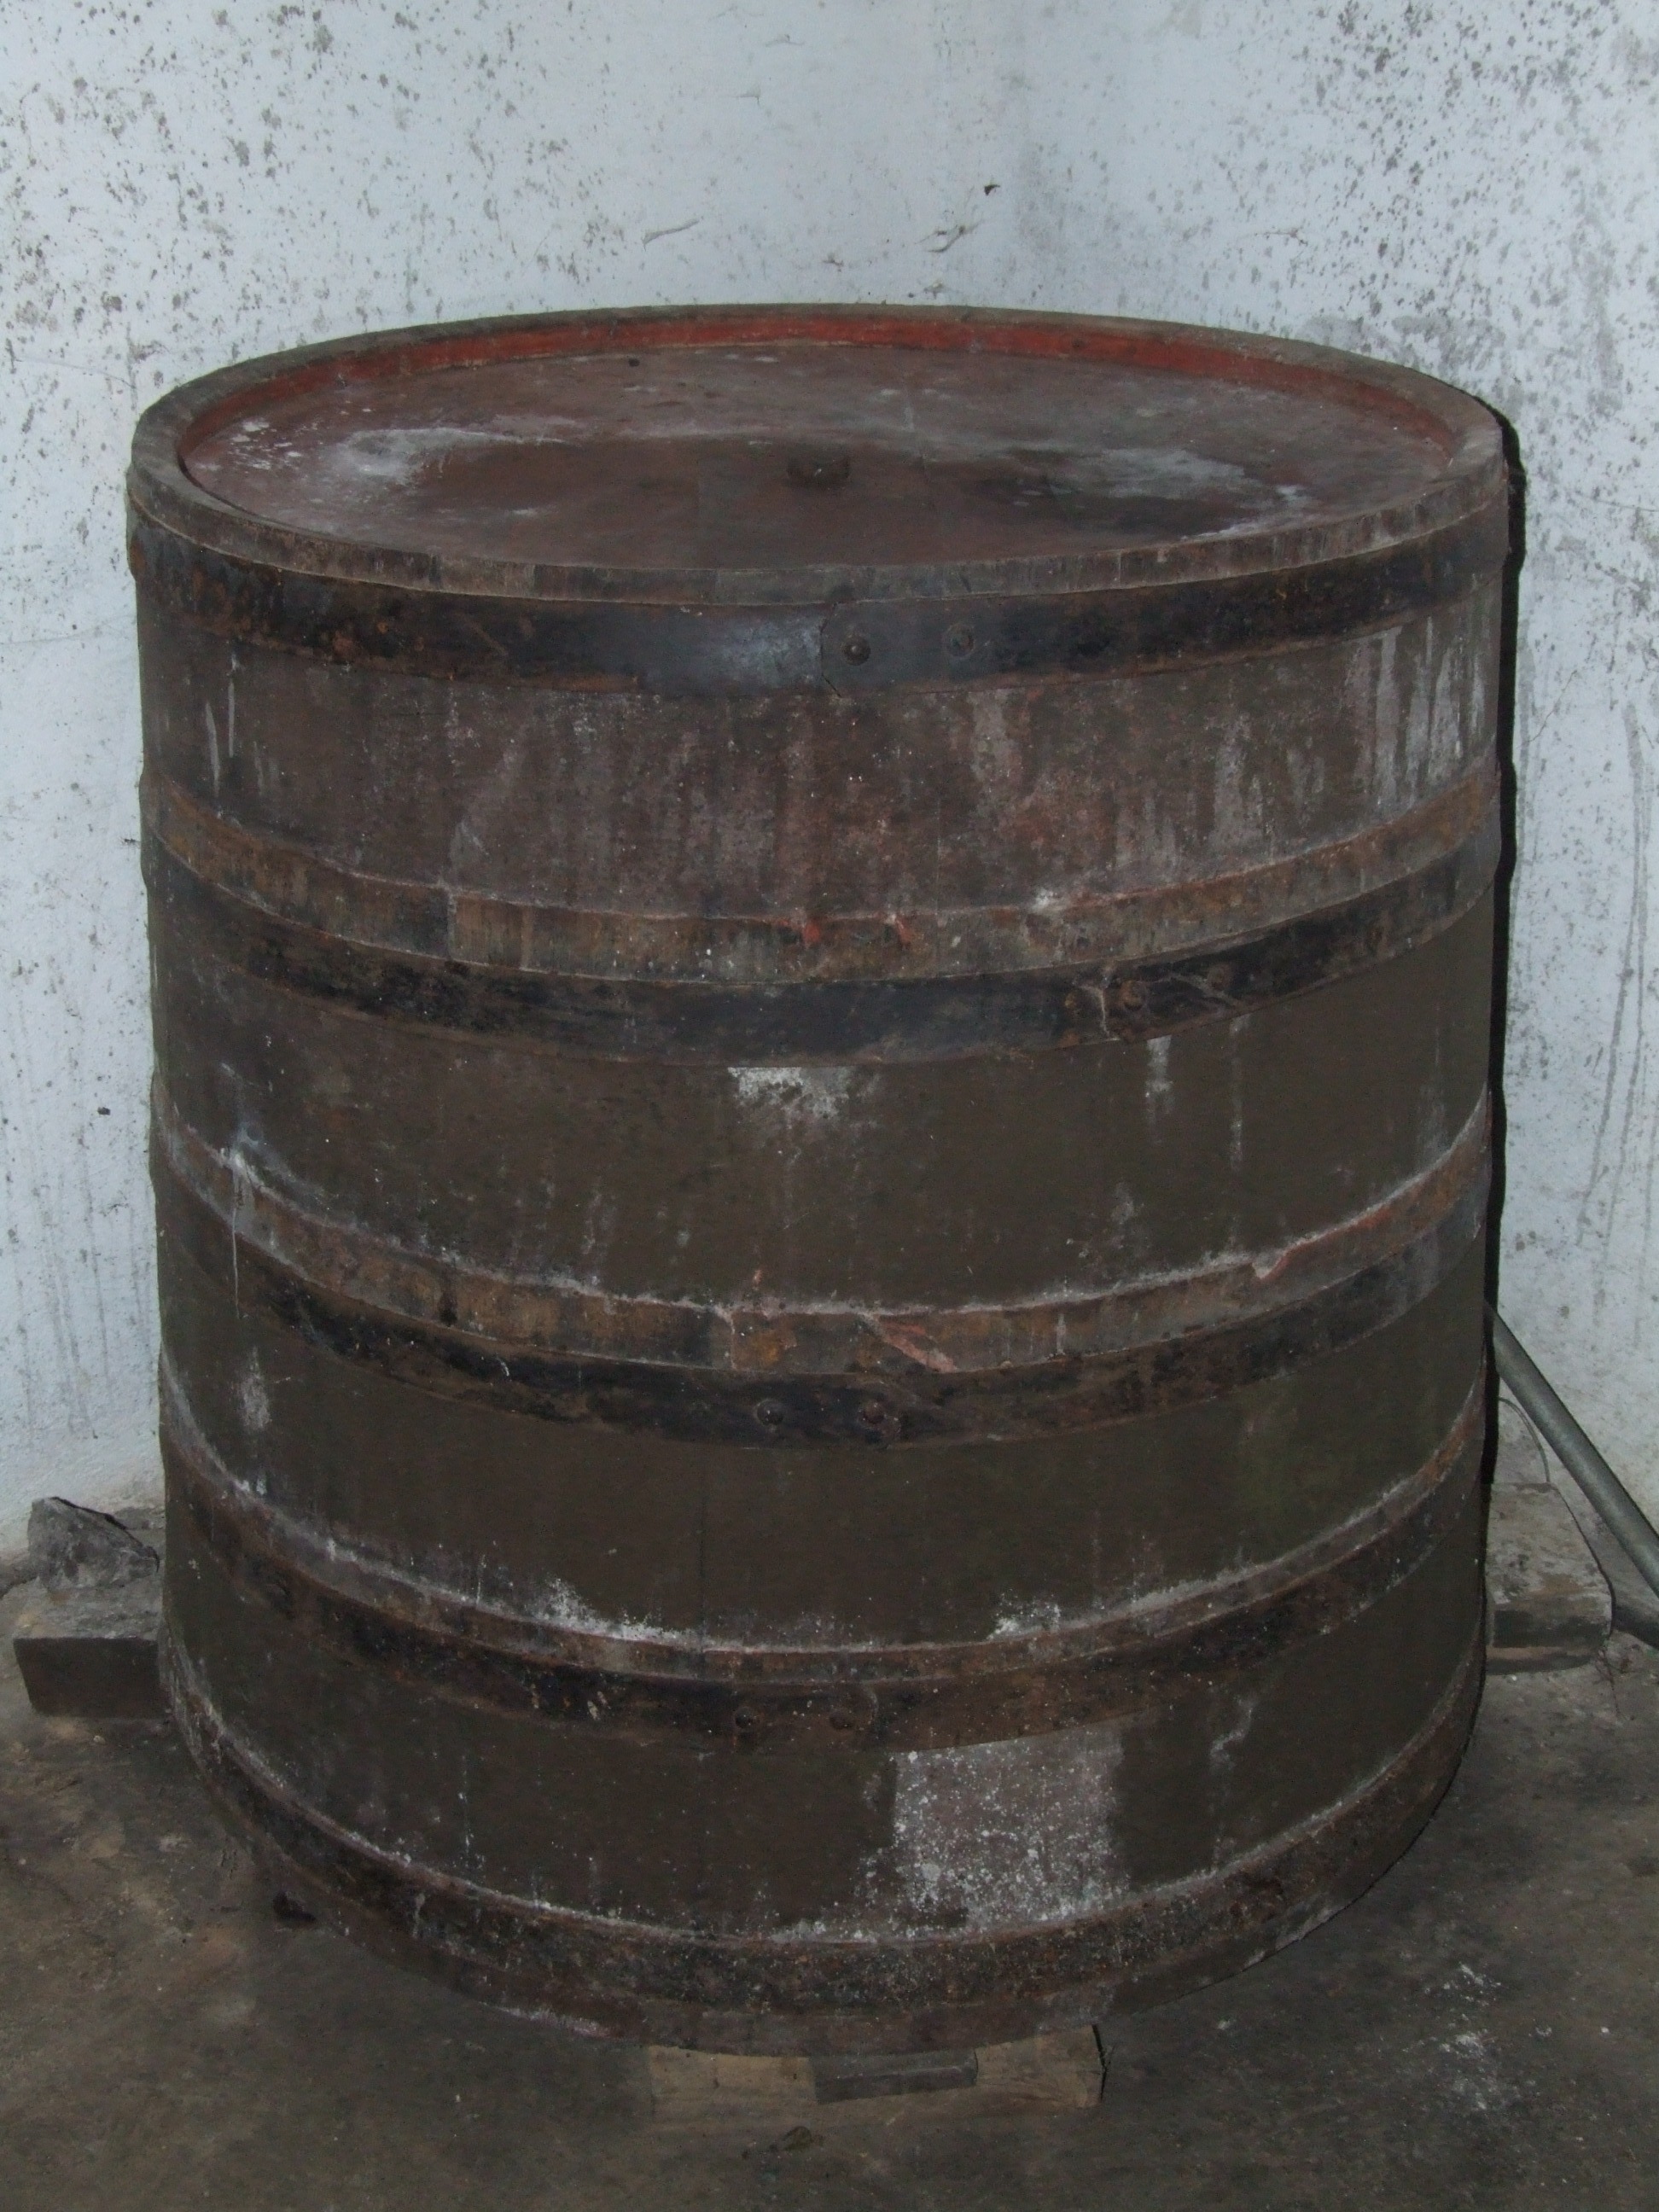 Barrel photo